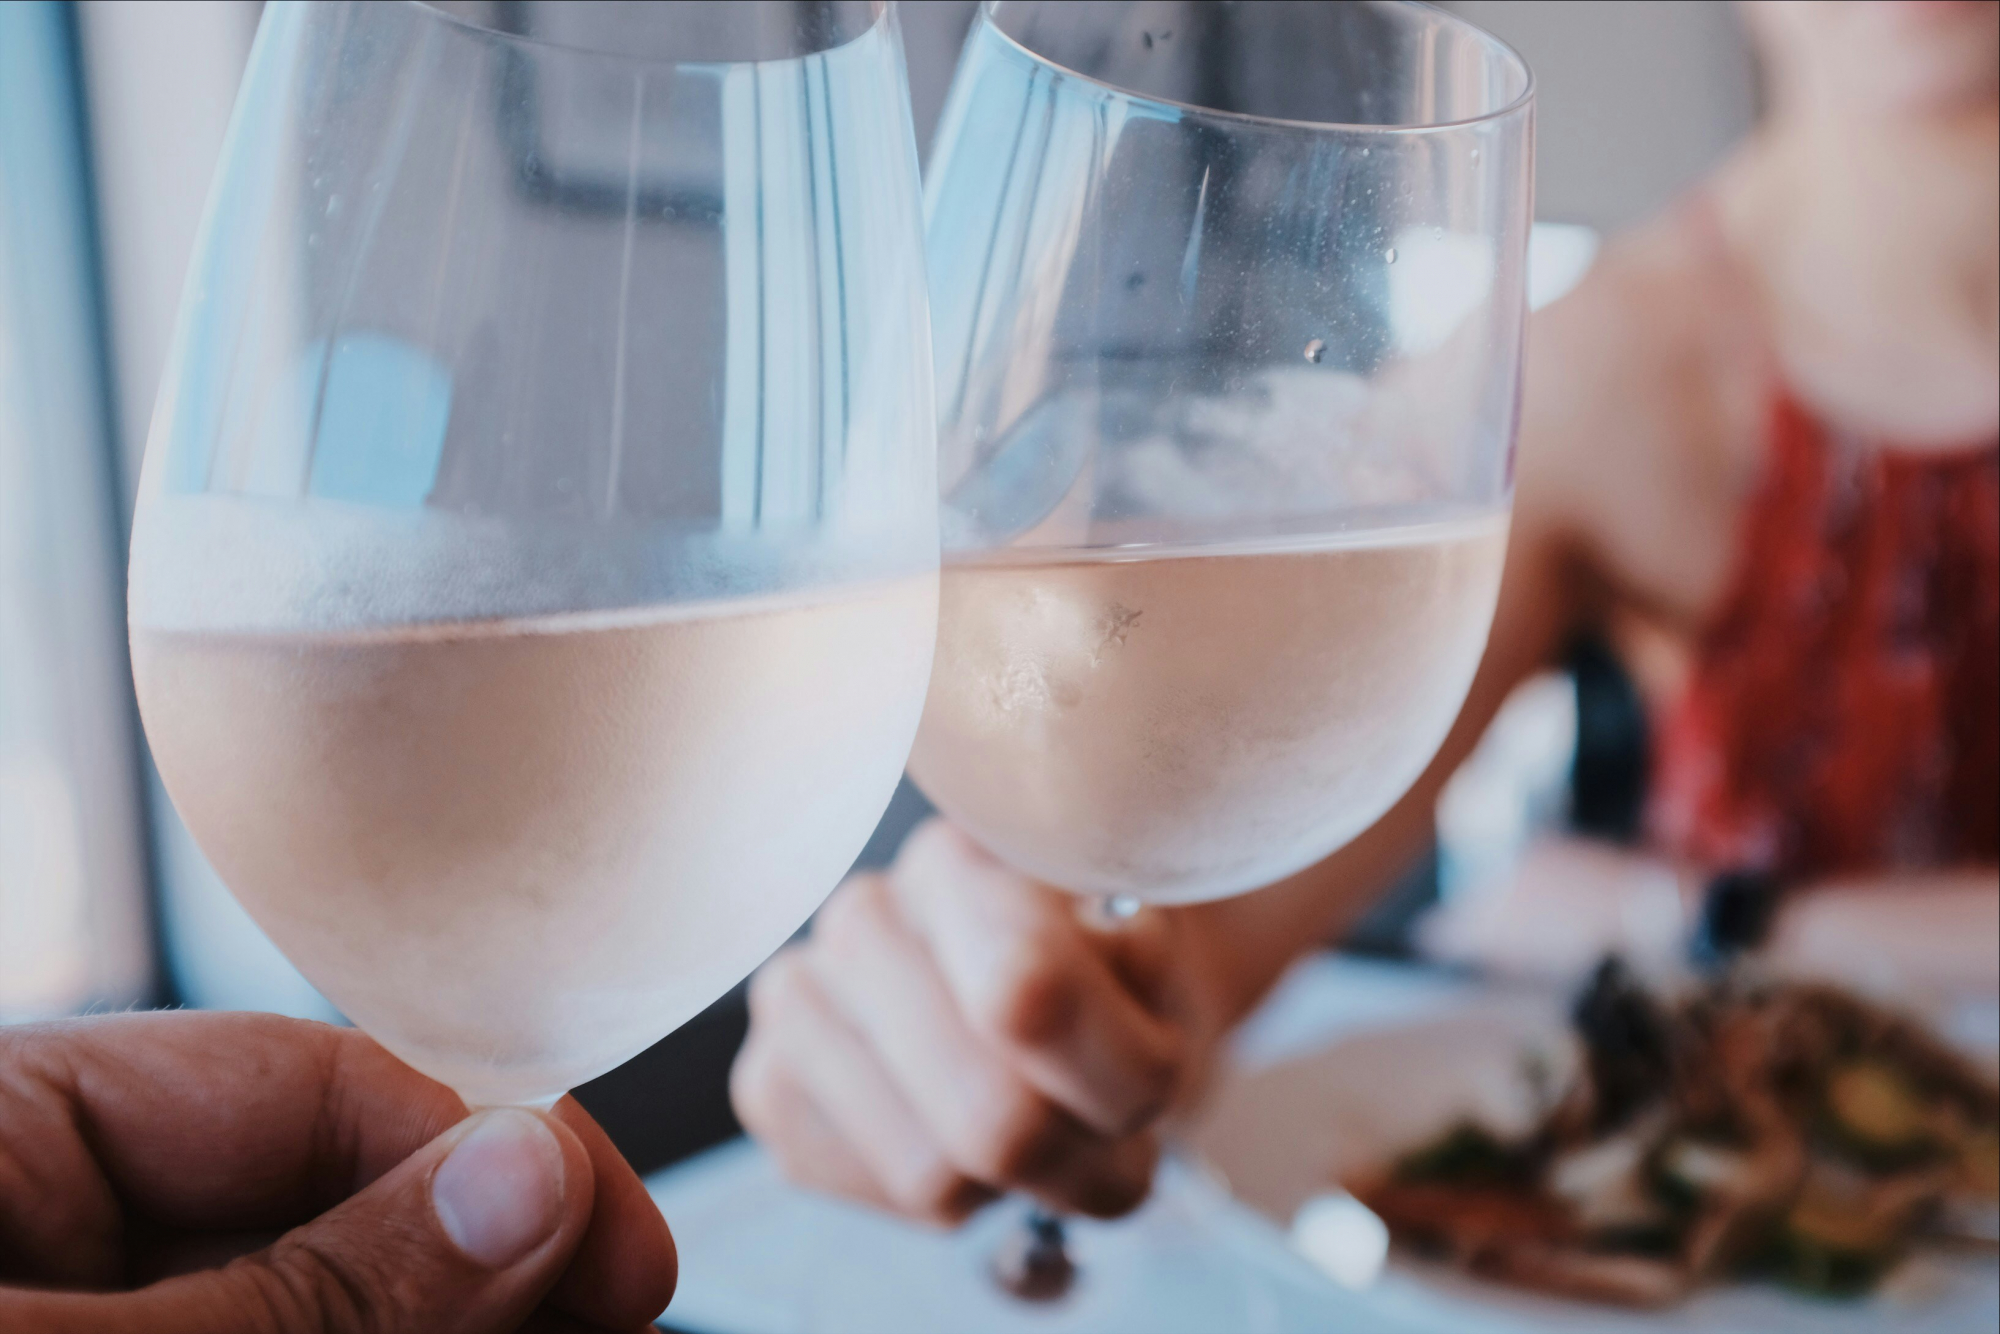 découvrez une sélection rafraîchissante de vins rosés pour savourer l'art de vivre à la française.